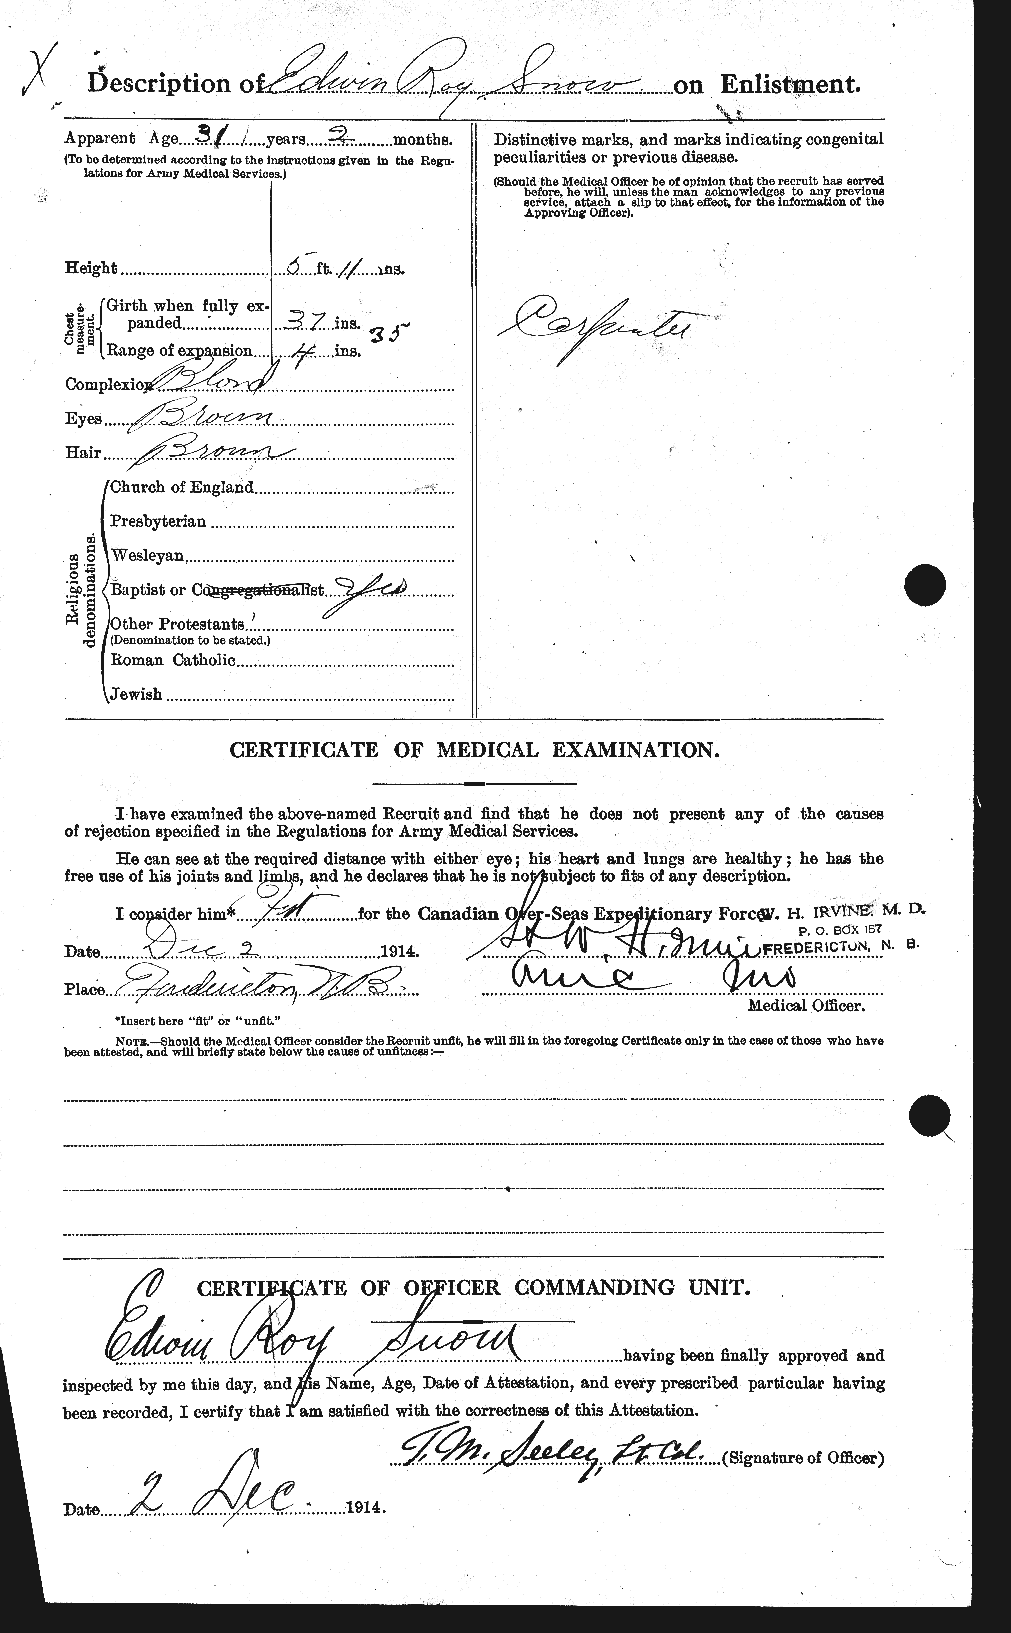 Dossiers du Personnel de la Première Guerre mondiale - CEC 109095b